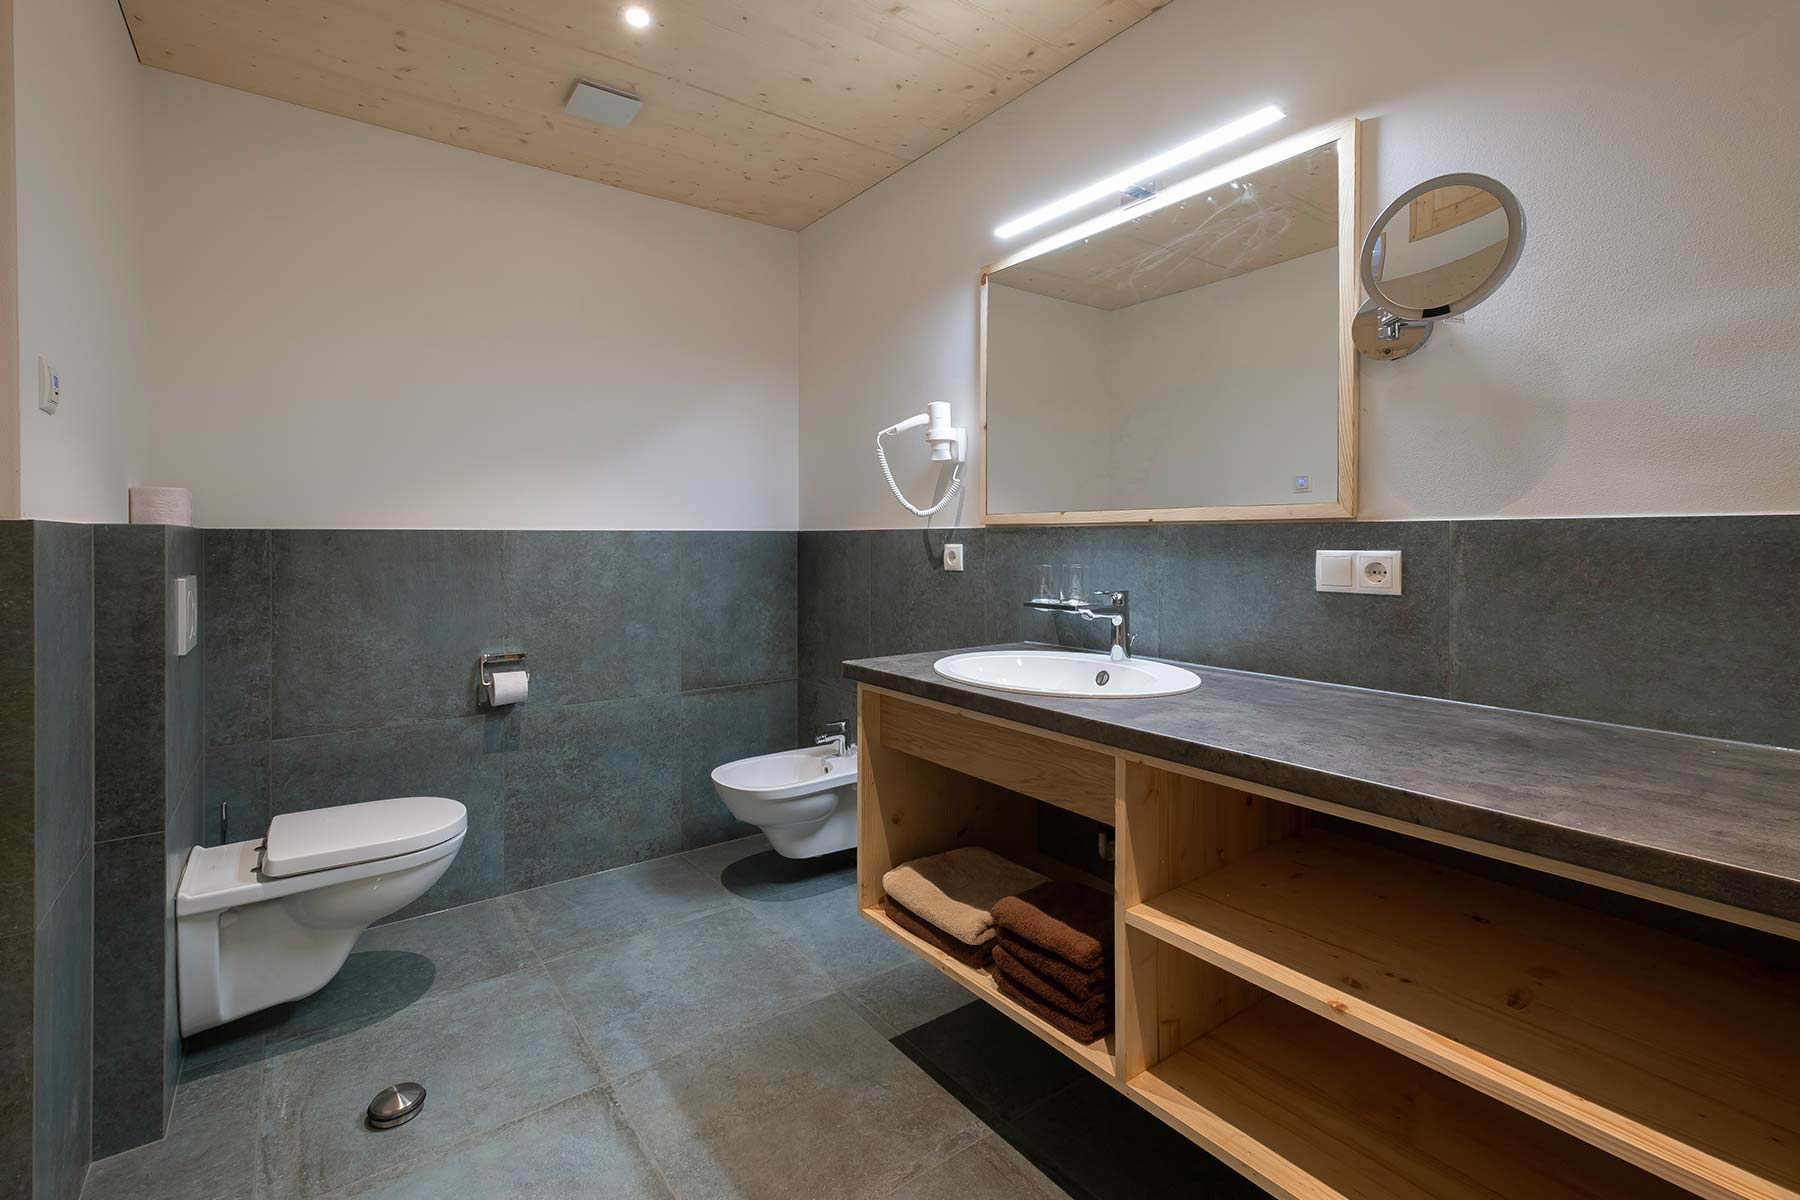  Bathroom with bidet & WC